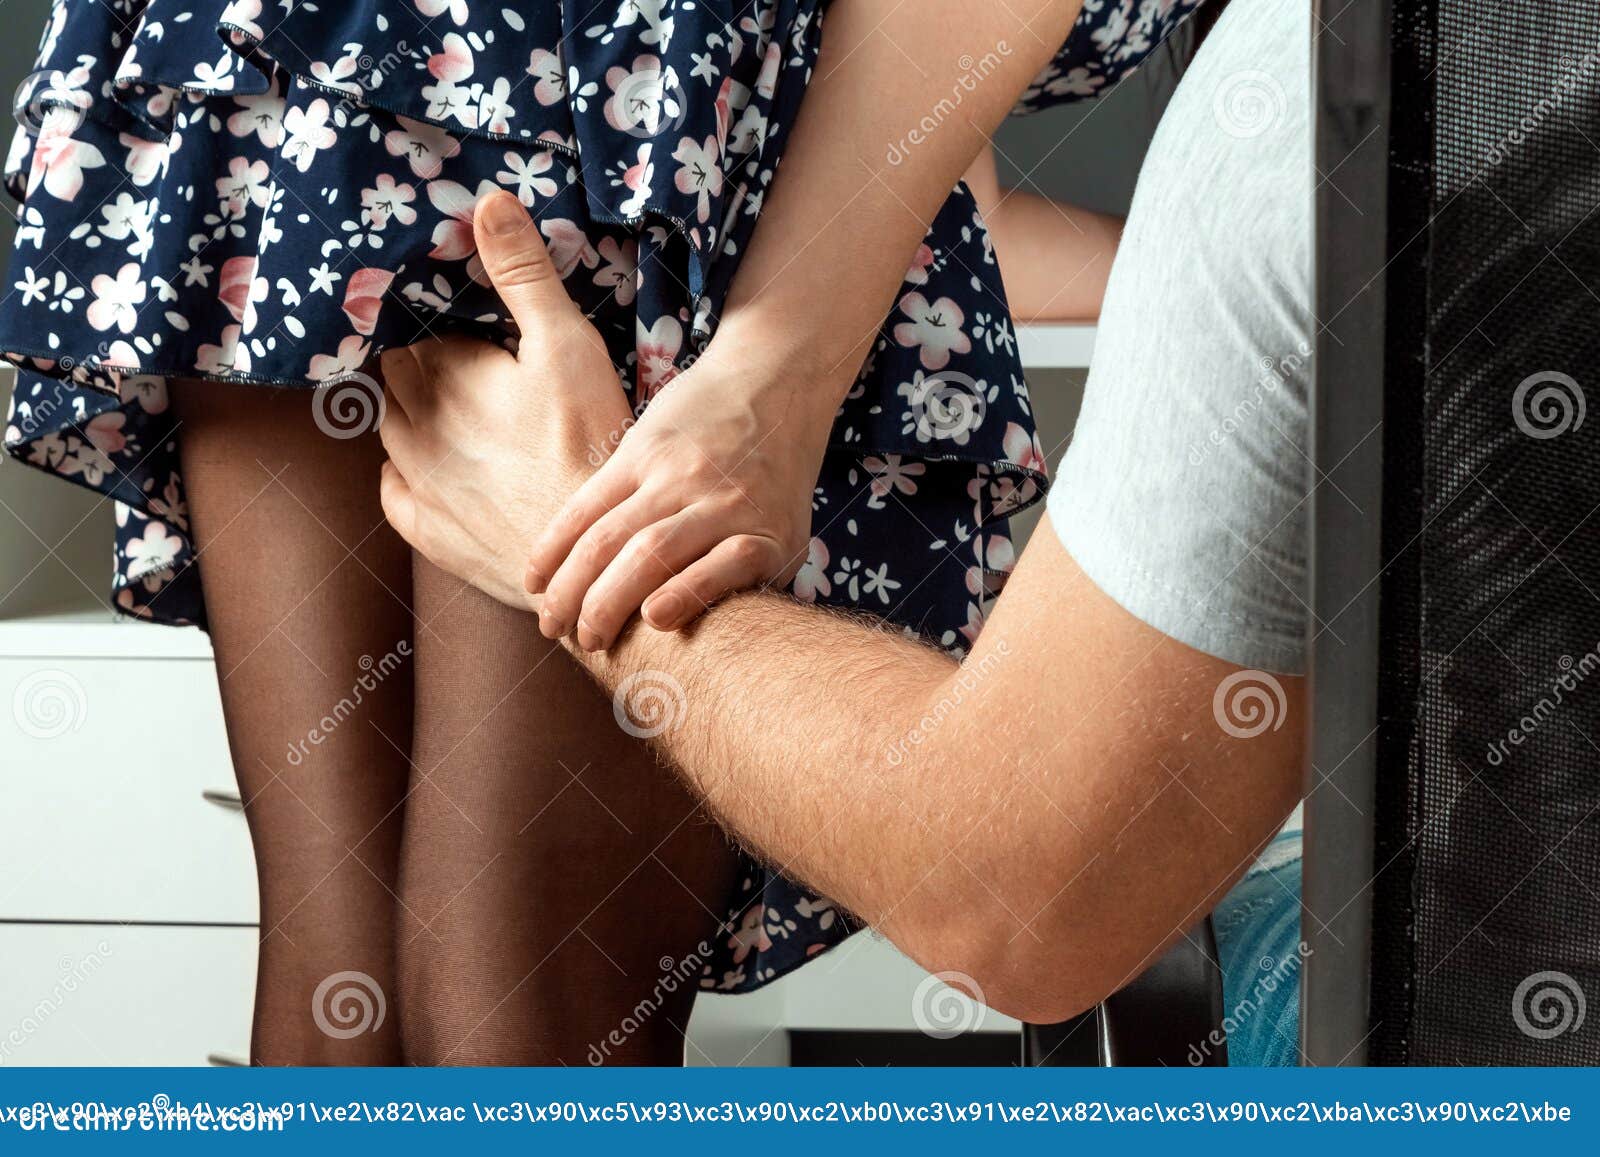 A Male Hand Climbs a Girl Under a Skirt ...